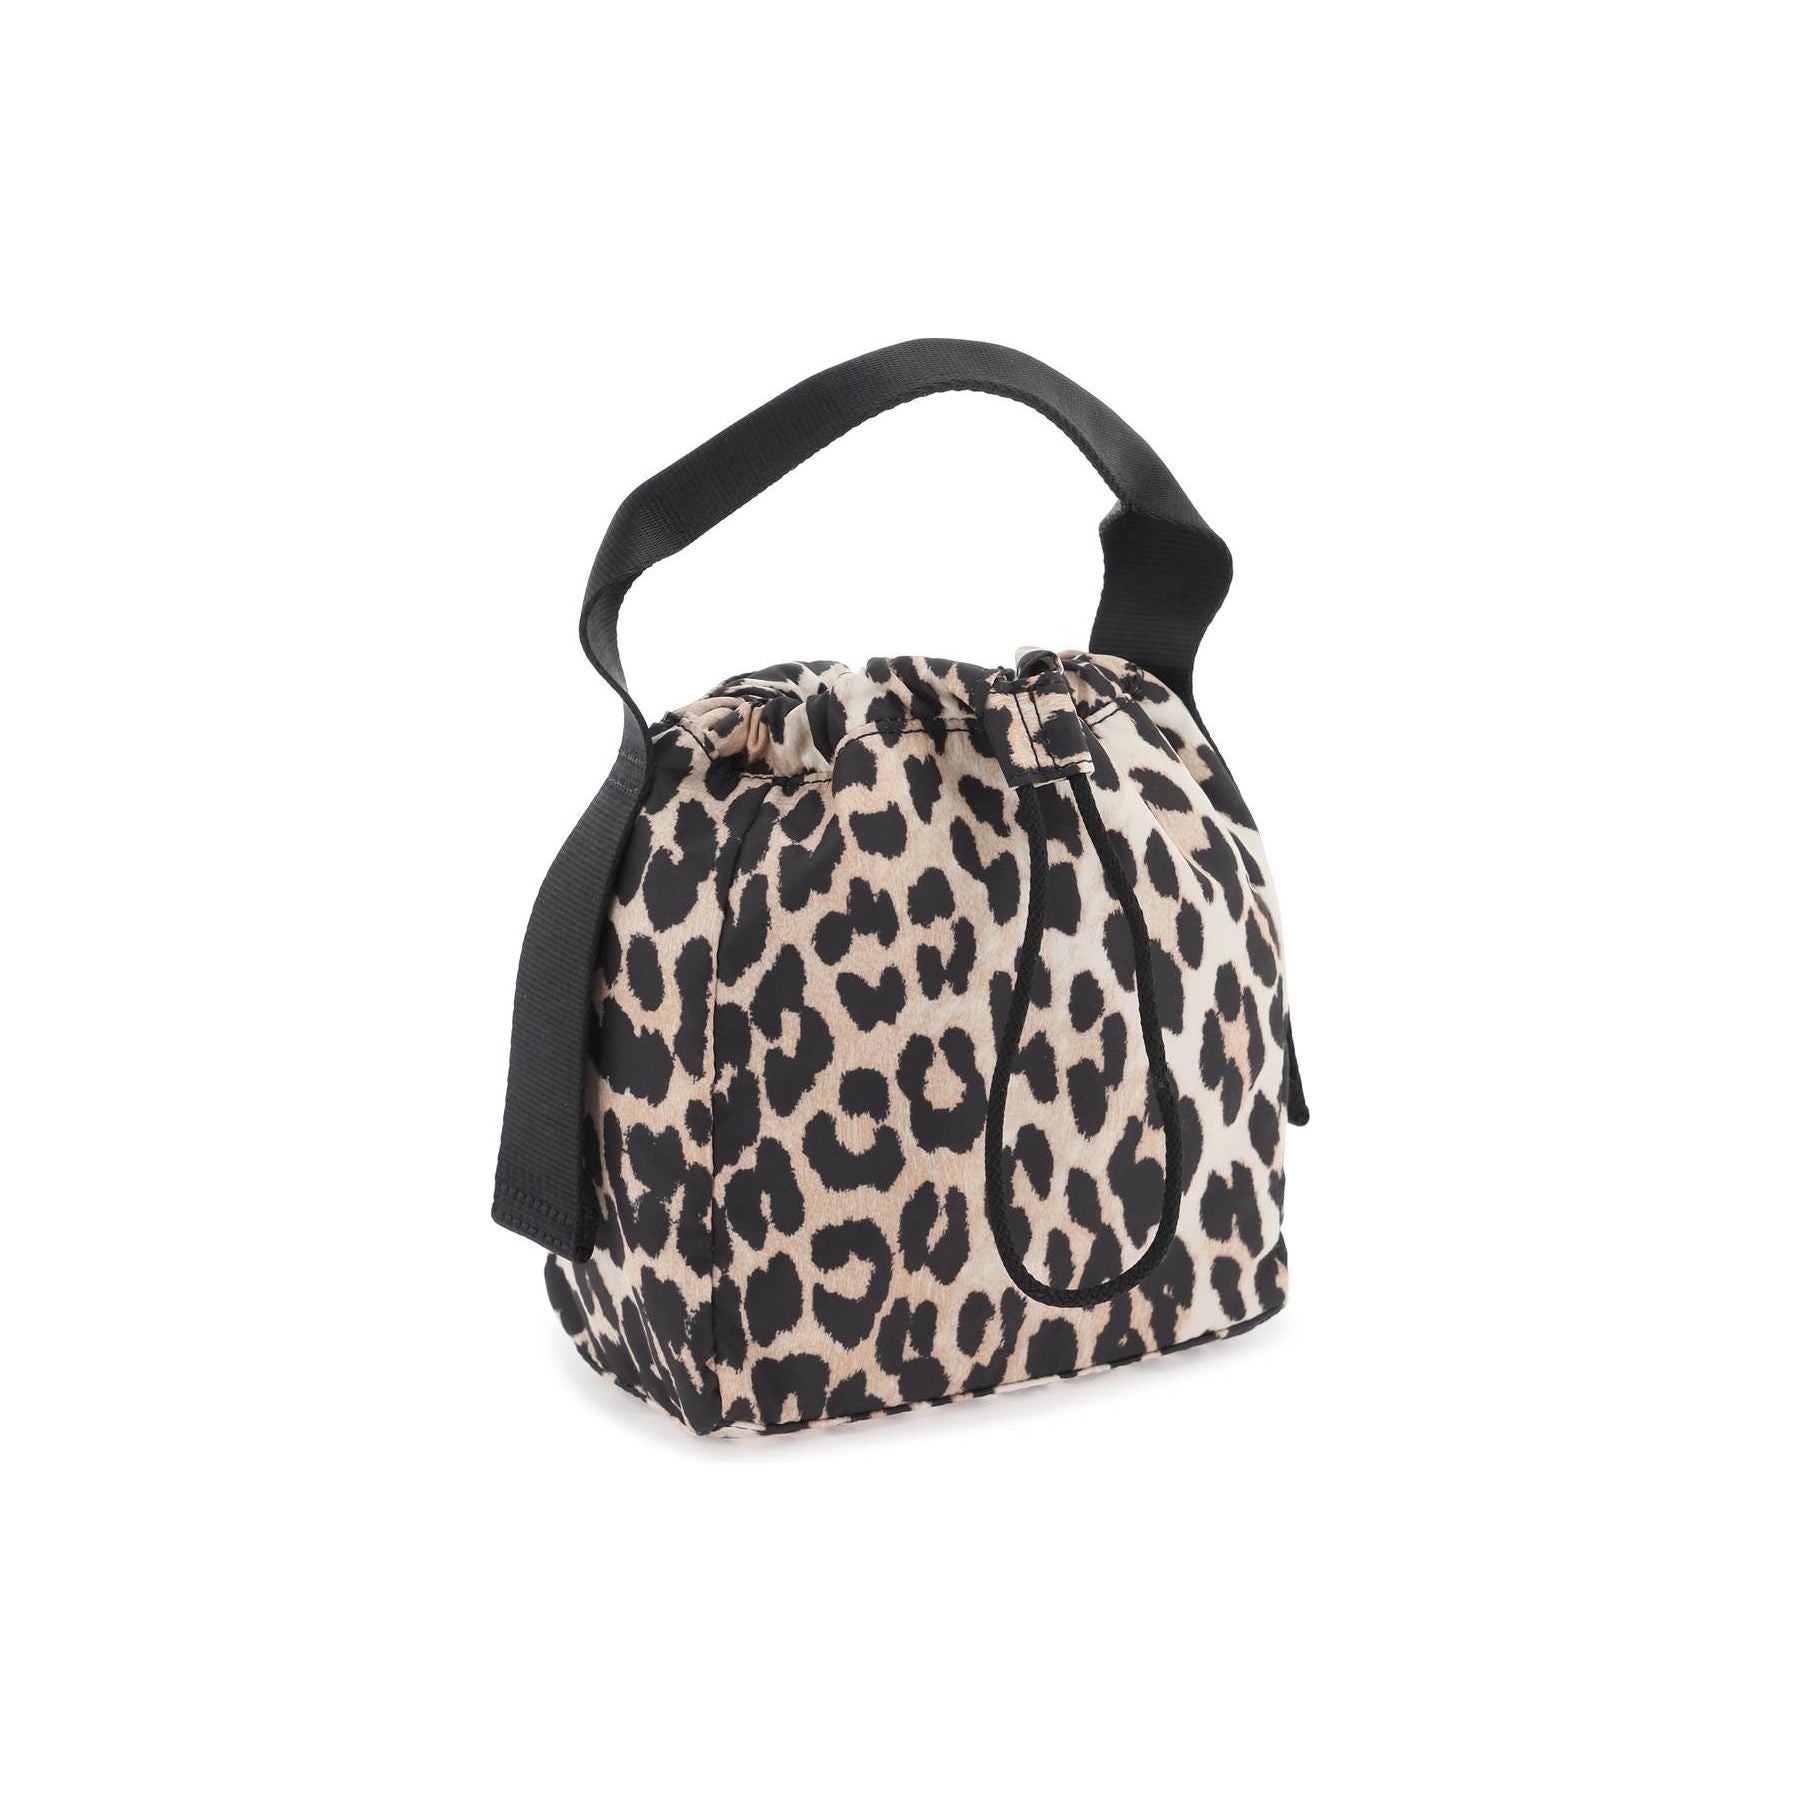 Leopard Print Tech Pouch Handbag